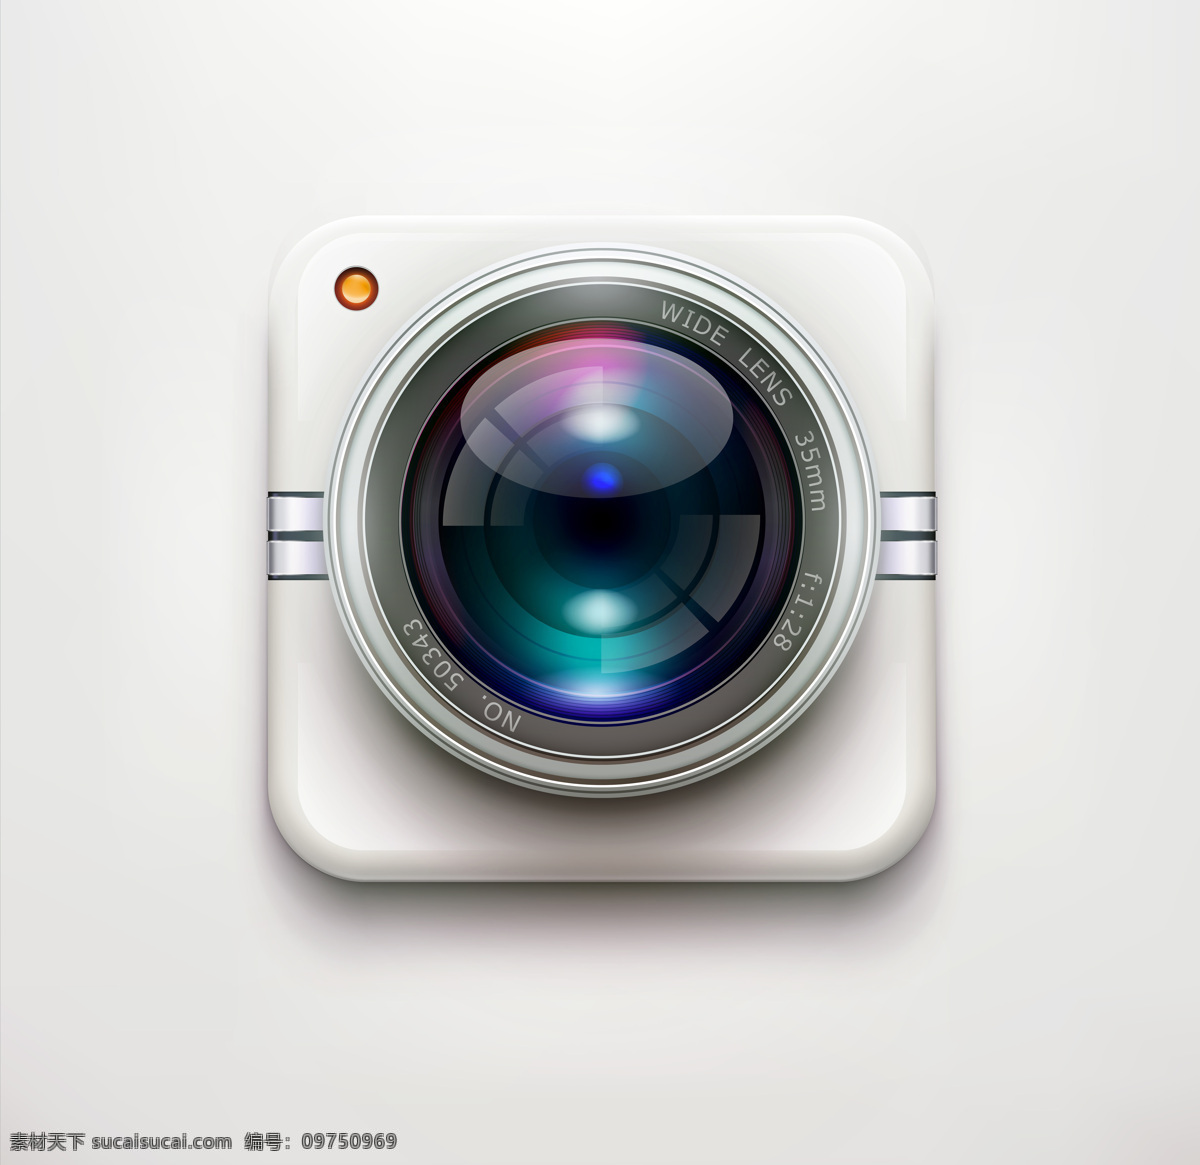 照相机按钮 app图标 应用程序图标 按钮图标 镜头 其他类别 生活百科 白色